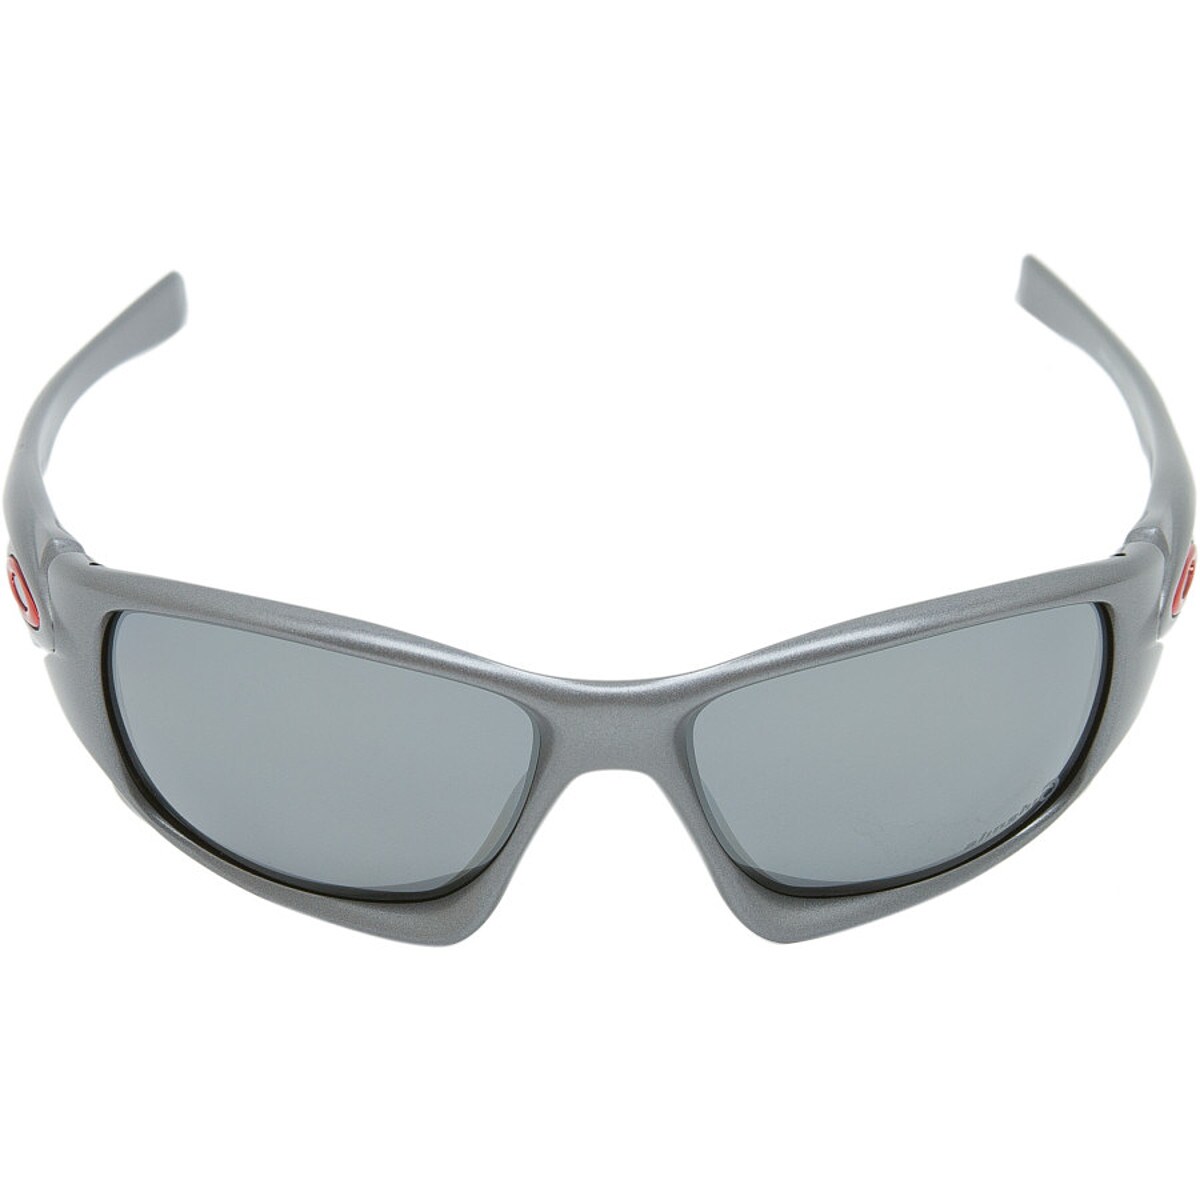 Oakley Ten Sunglasses - Alinghi Special Edition - Polarized - Accessories